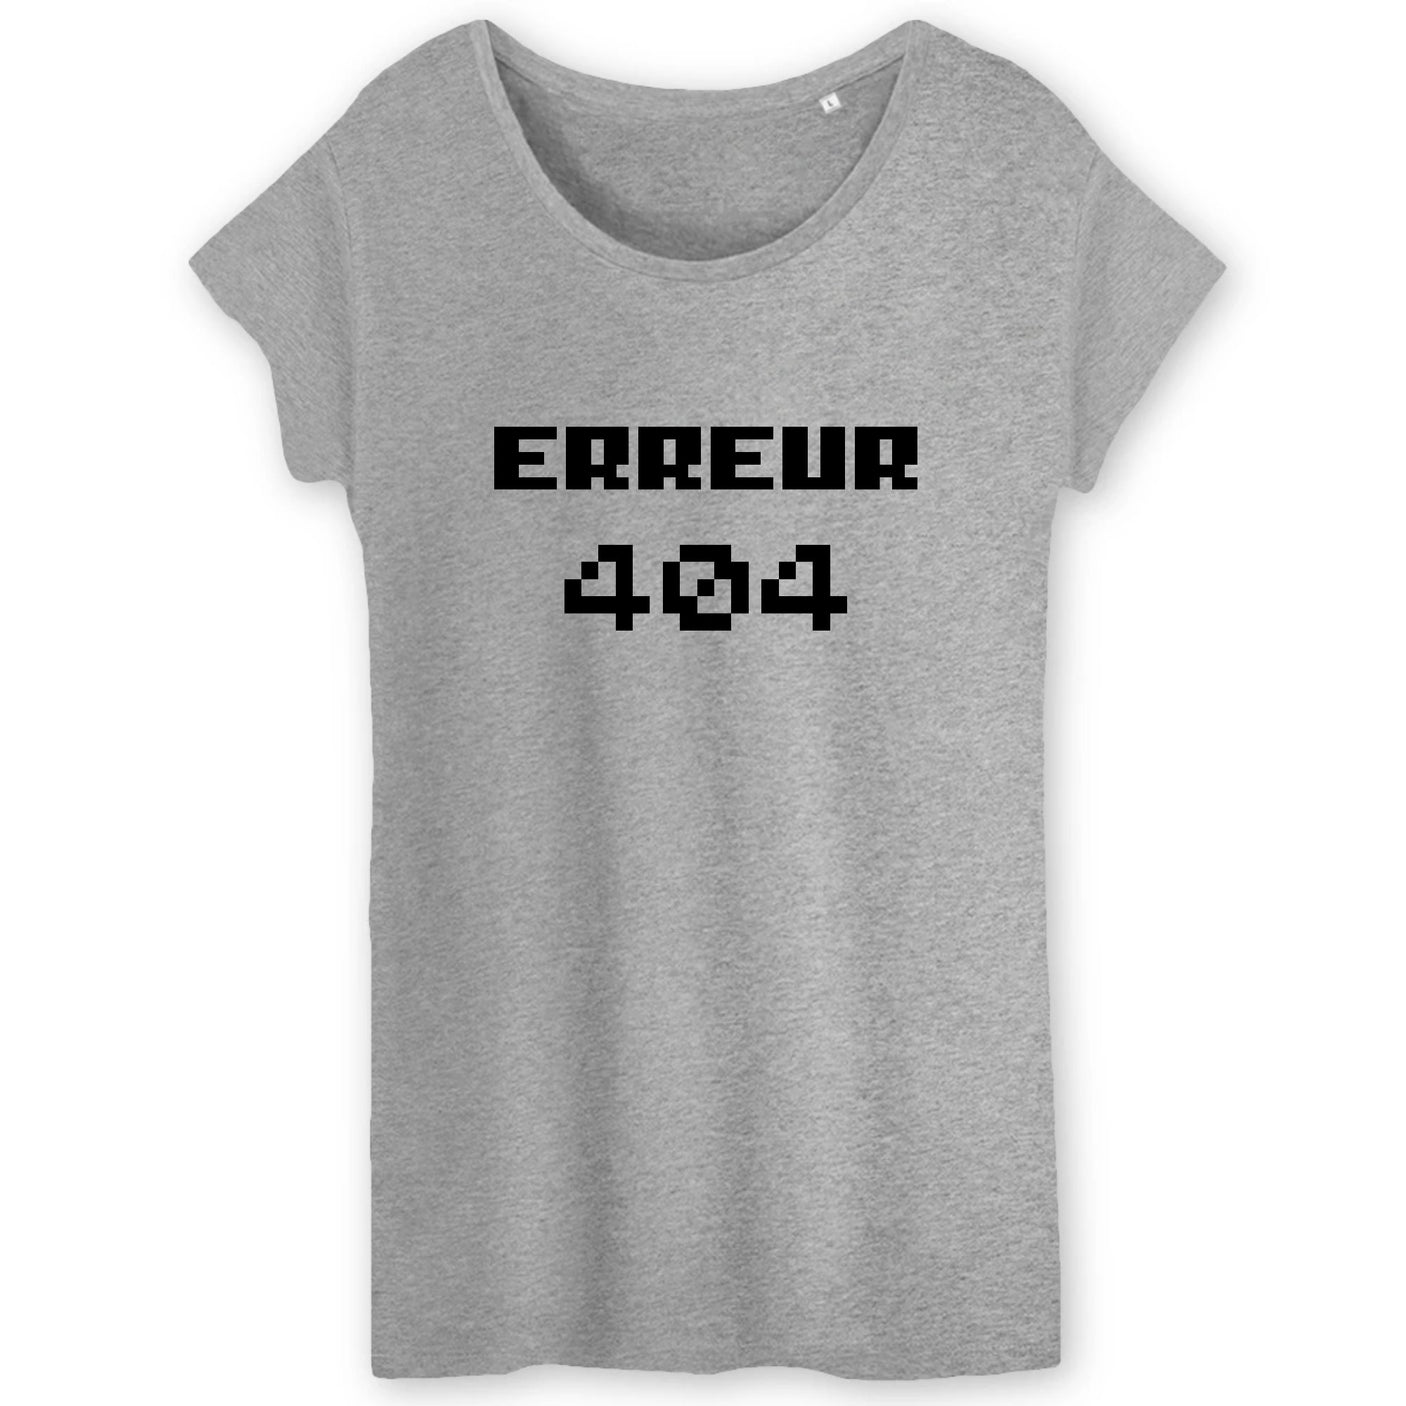 T-Shirt Femme Erreur 404 